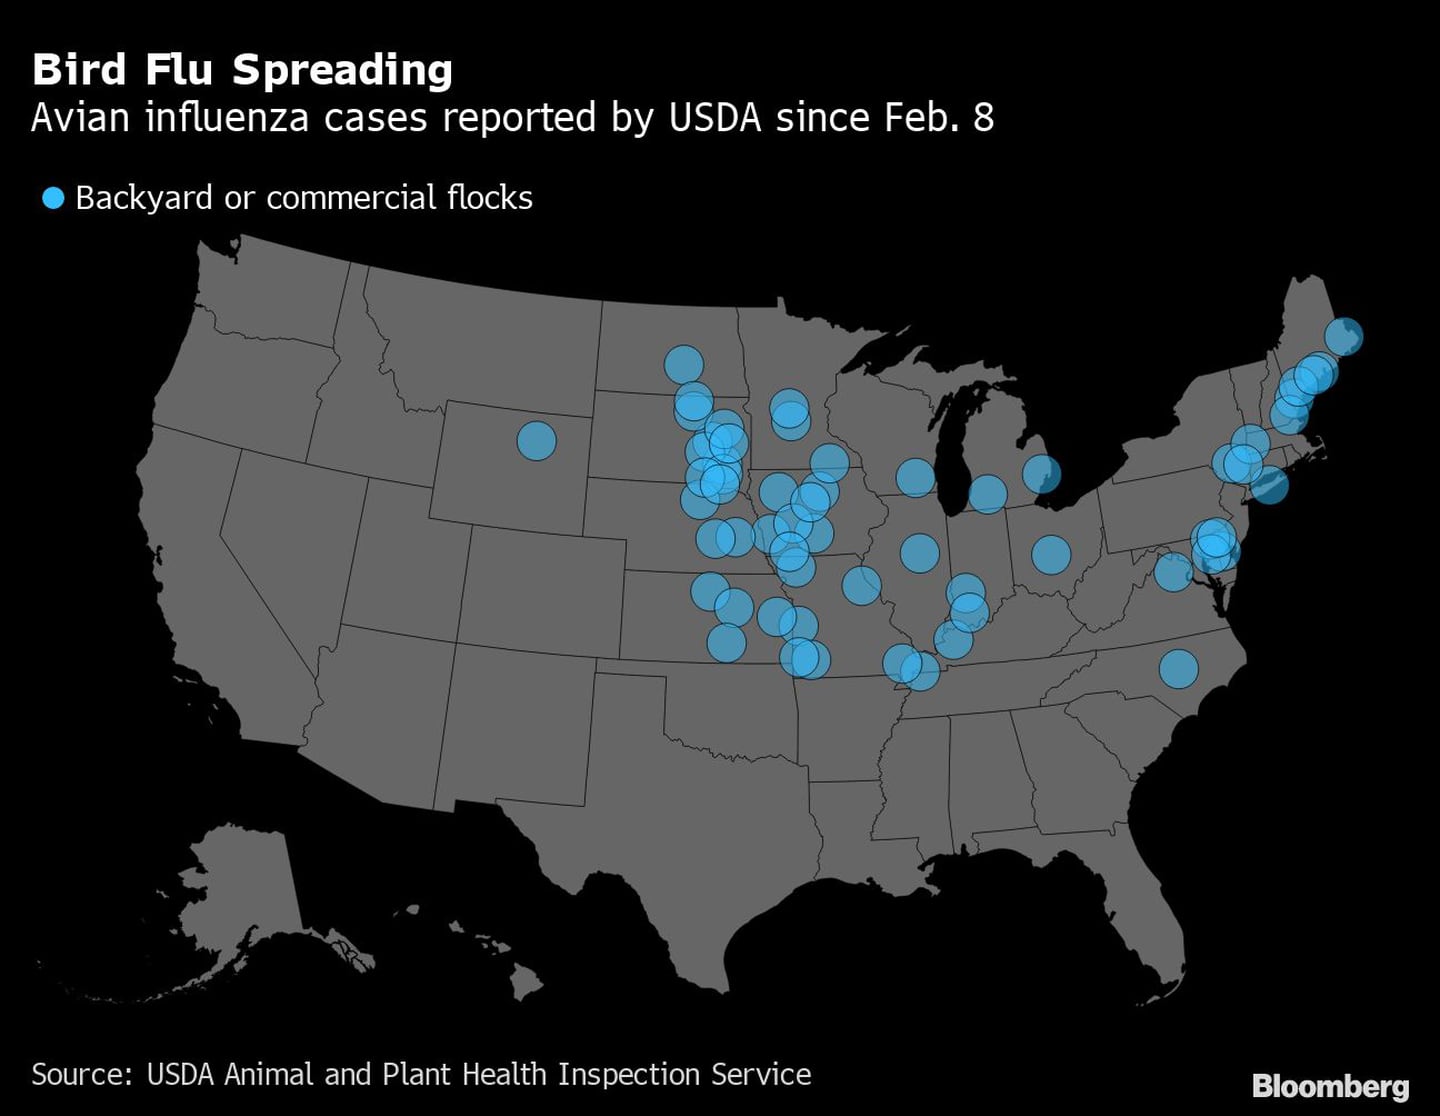 Propagación de la gripe | Casos de influenza aviar reportados por el USDA desde el 8 de febrero

dfd